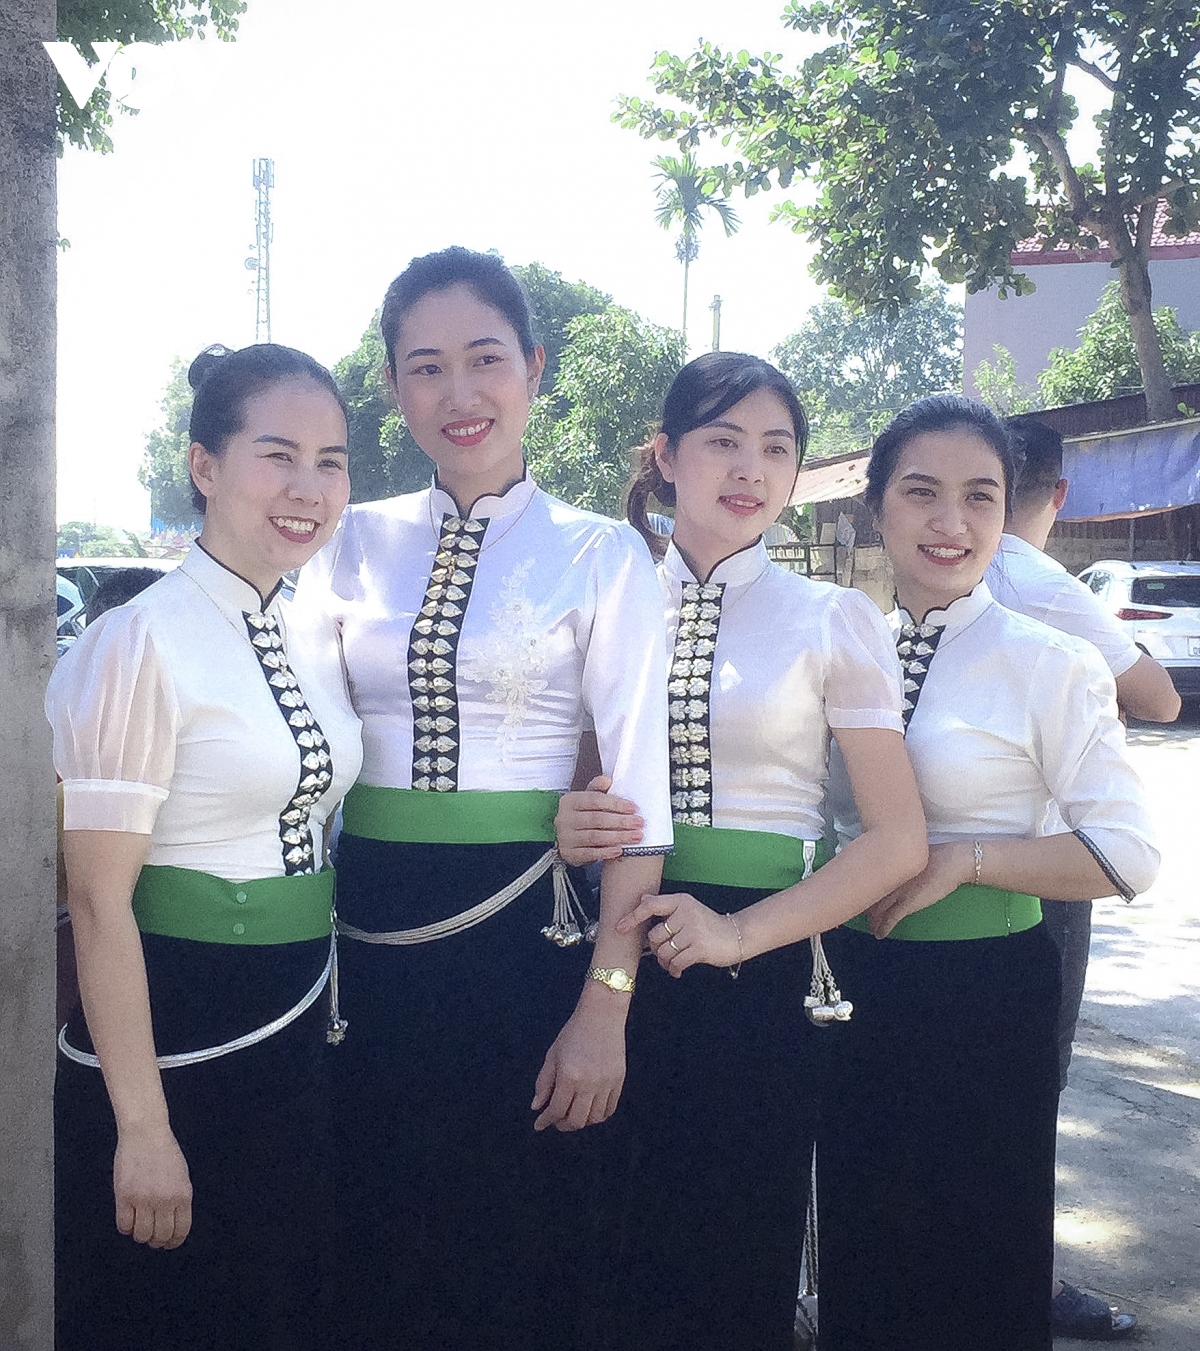 Trang phục nữ dân tộc Thái có ý nghĩa văn hóa như thế nào?